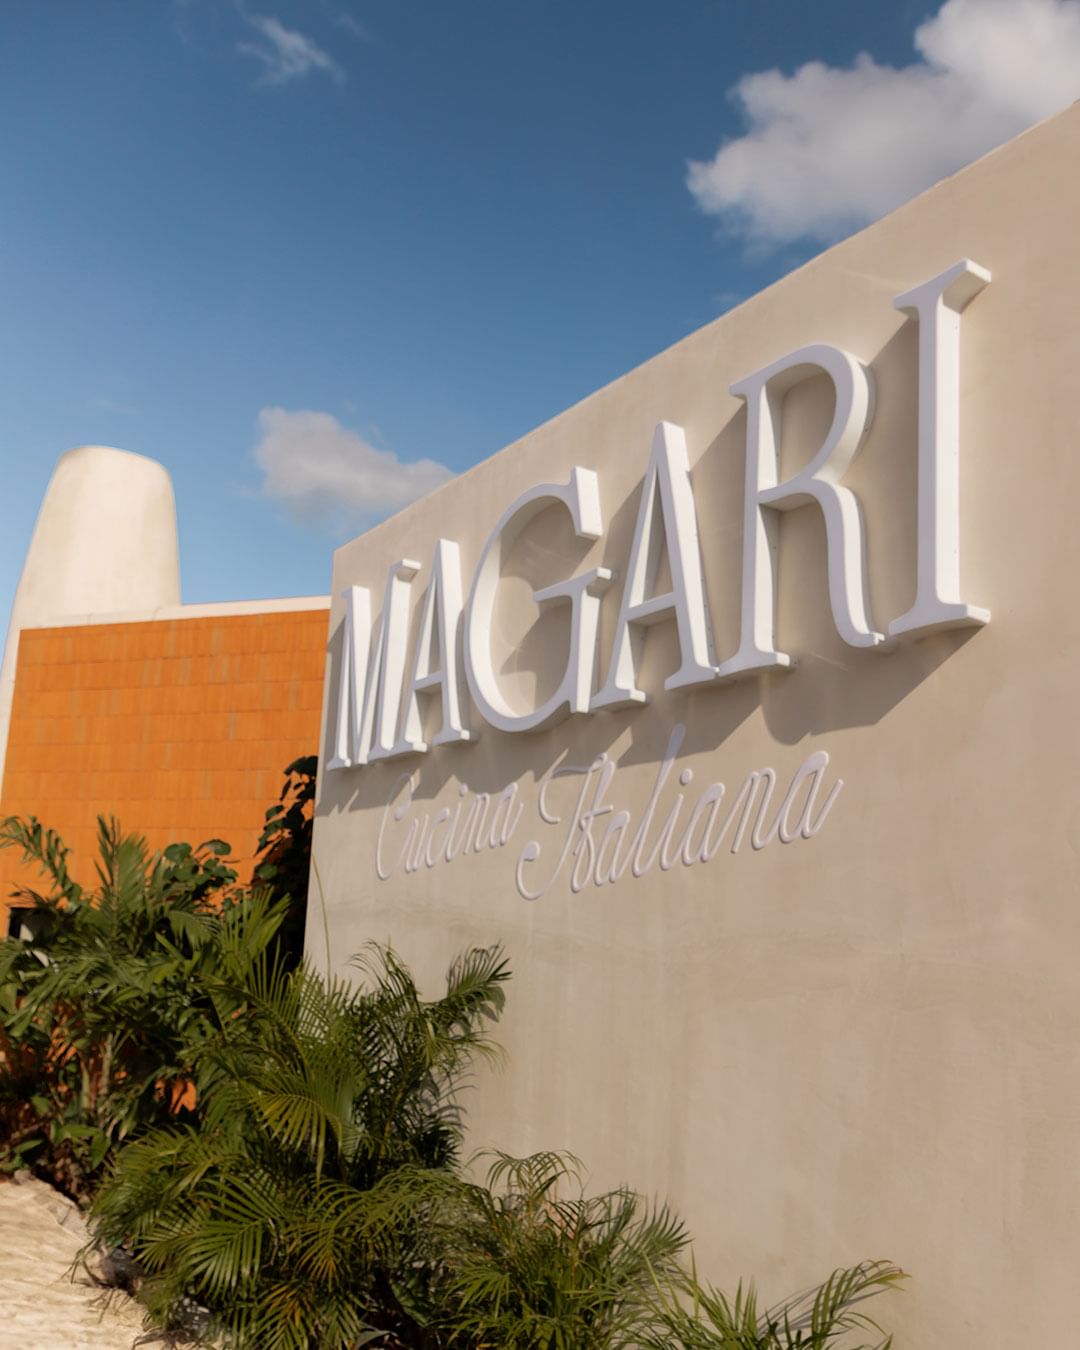 Restaurante Magari Cancún